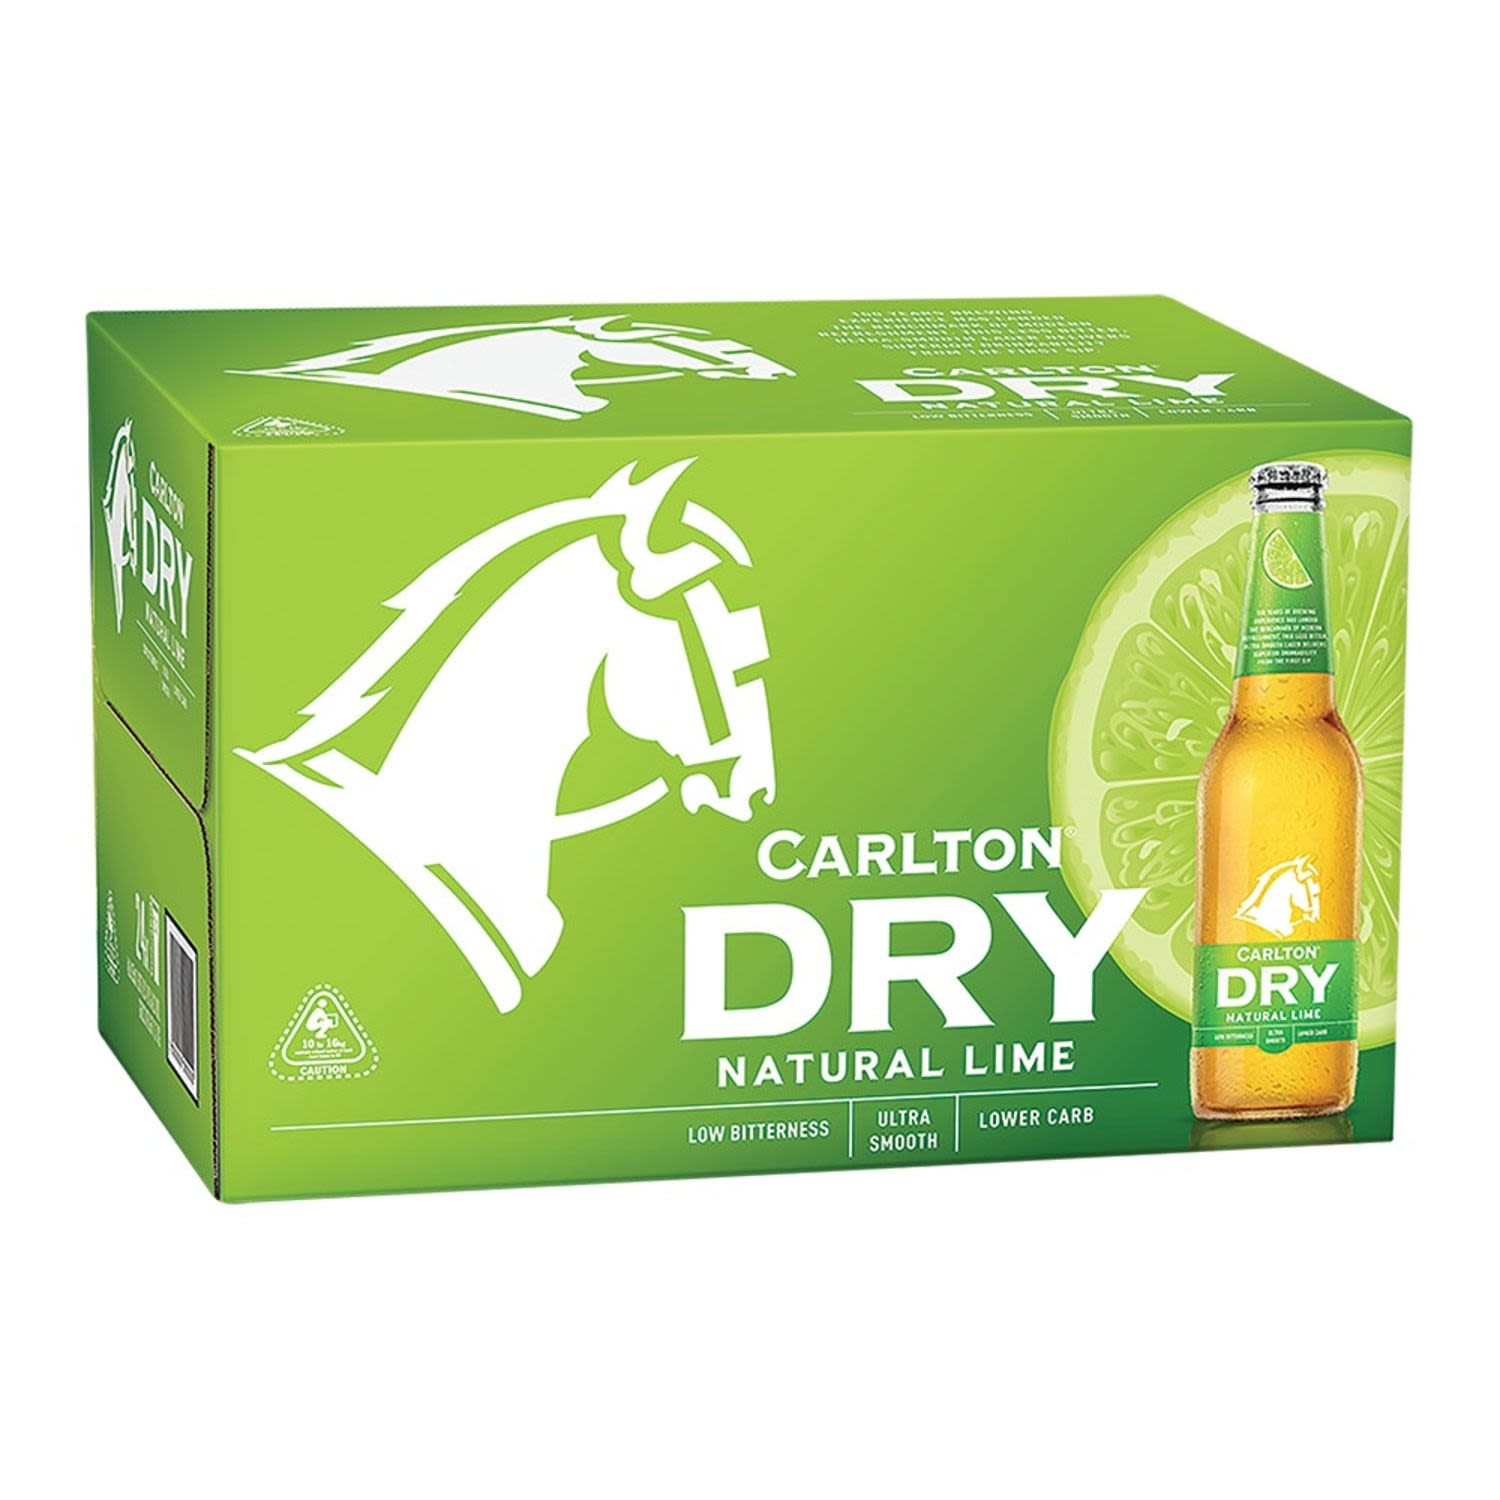 Carlton Dry Lime Peels Bottle 330mL 24 Pack